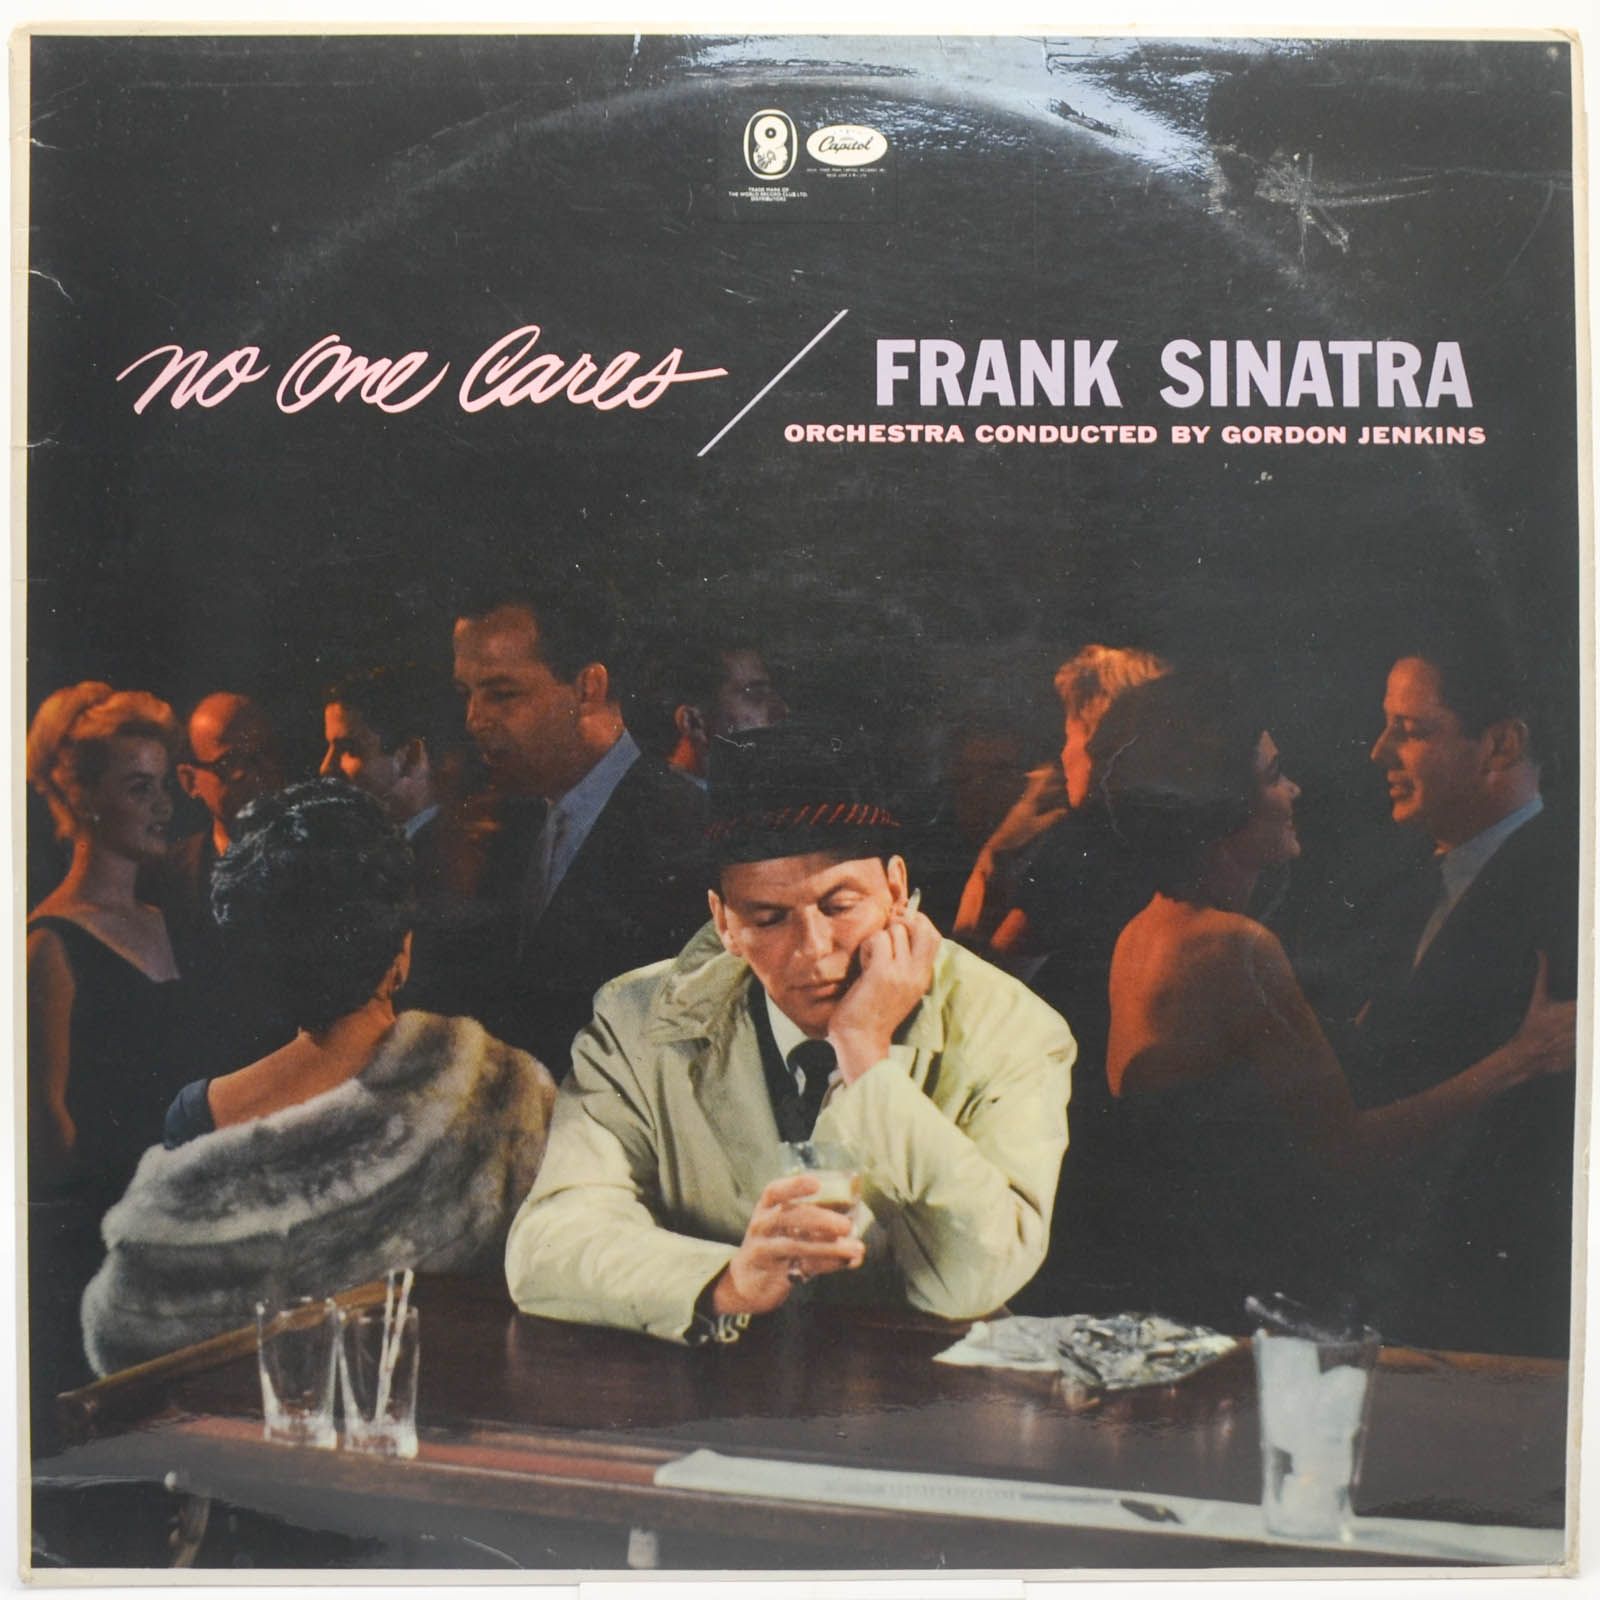 Frank Sinatra — No-One Cares (UK), 1968